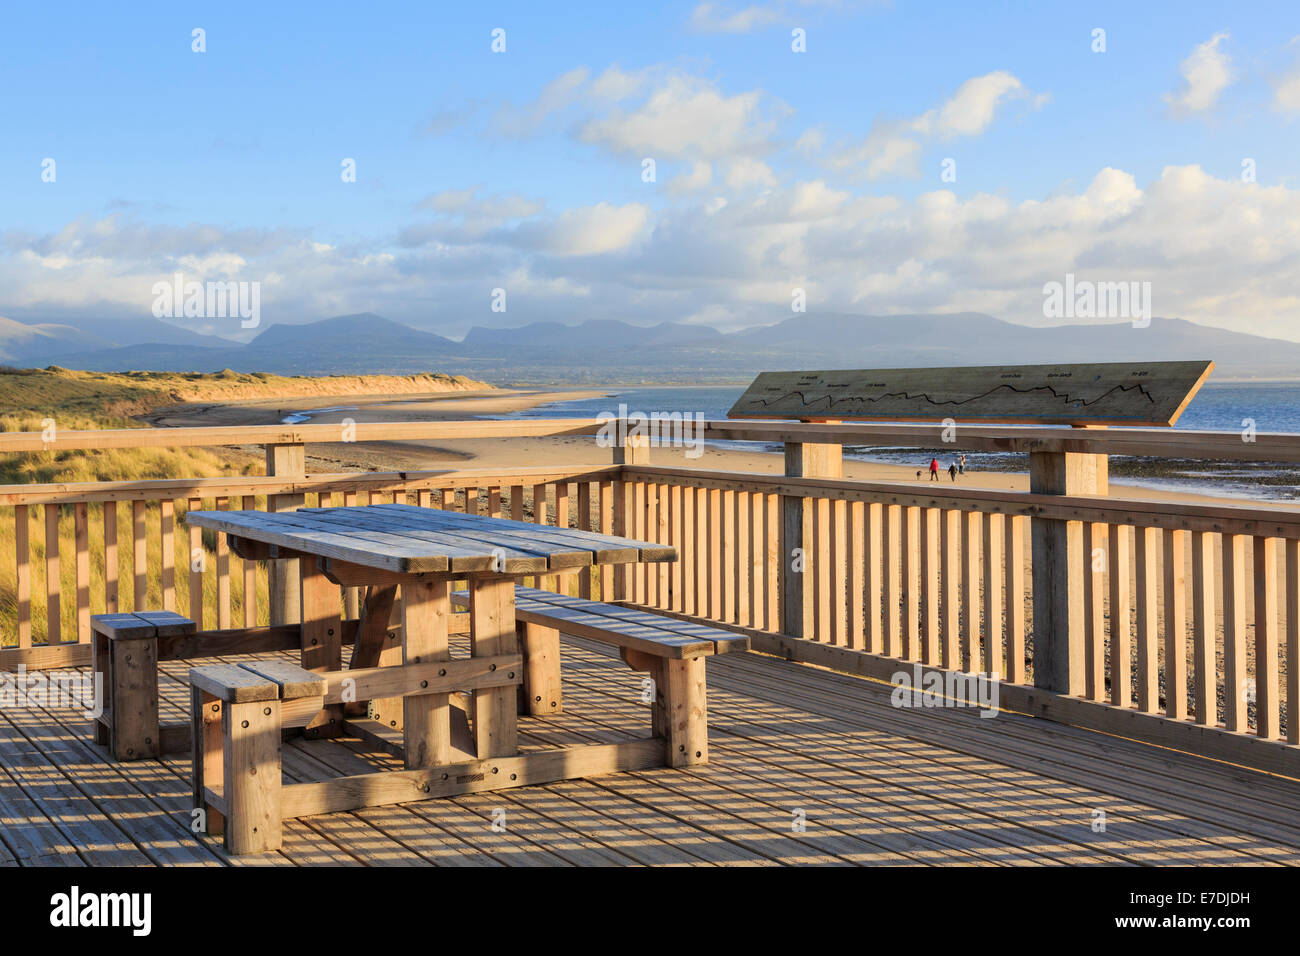 Terrasse en bois et de tables de pique-nique au-dessus de plage avec vue sur les montagnes avant qu'il a été emporté dans une tempête. Newborough, Isle of Anglesey, au nord du Pays de Galles, Royaume-Uni Banque D'Images